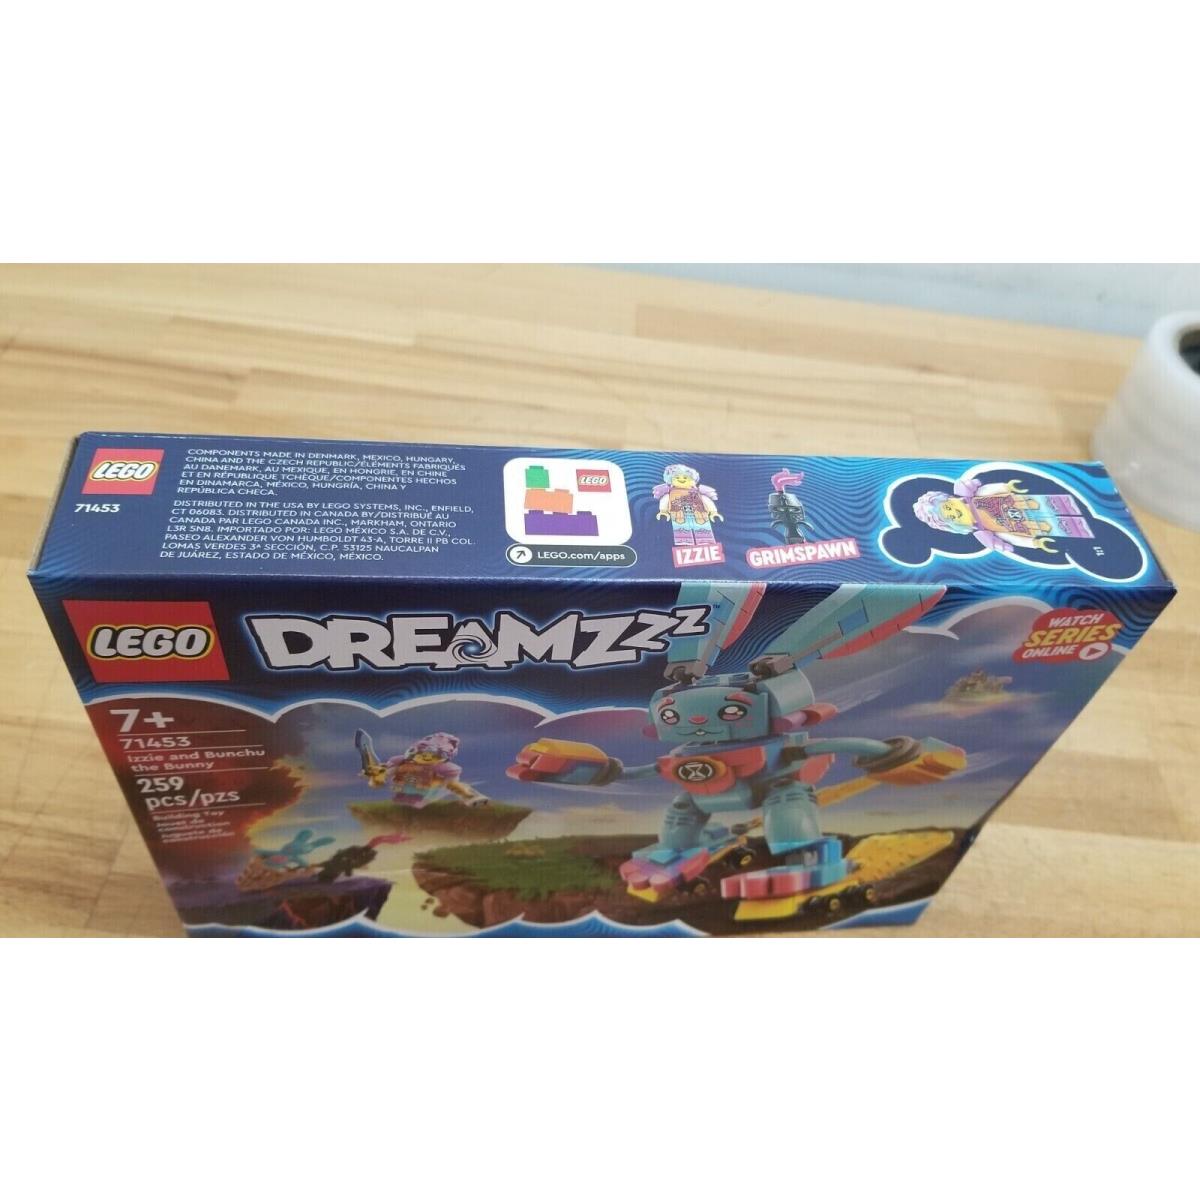 Lego Dreamzzz: Izzie and Bunchu The Bunny 71453